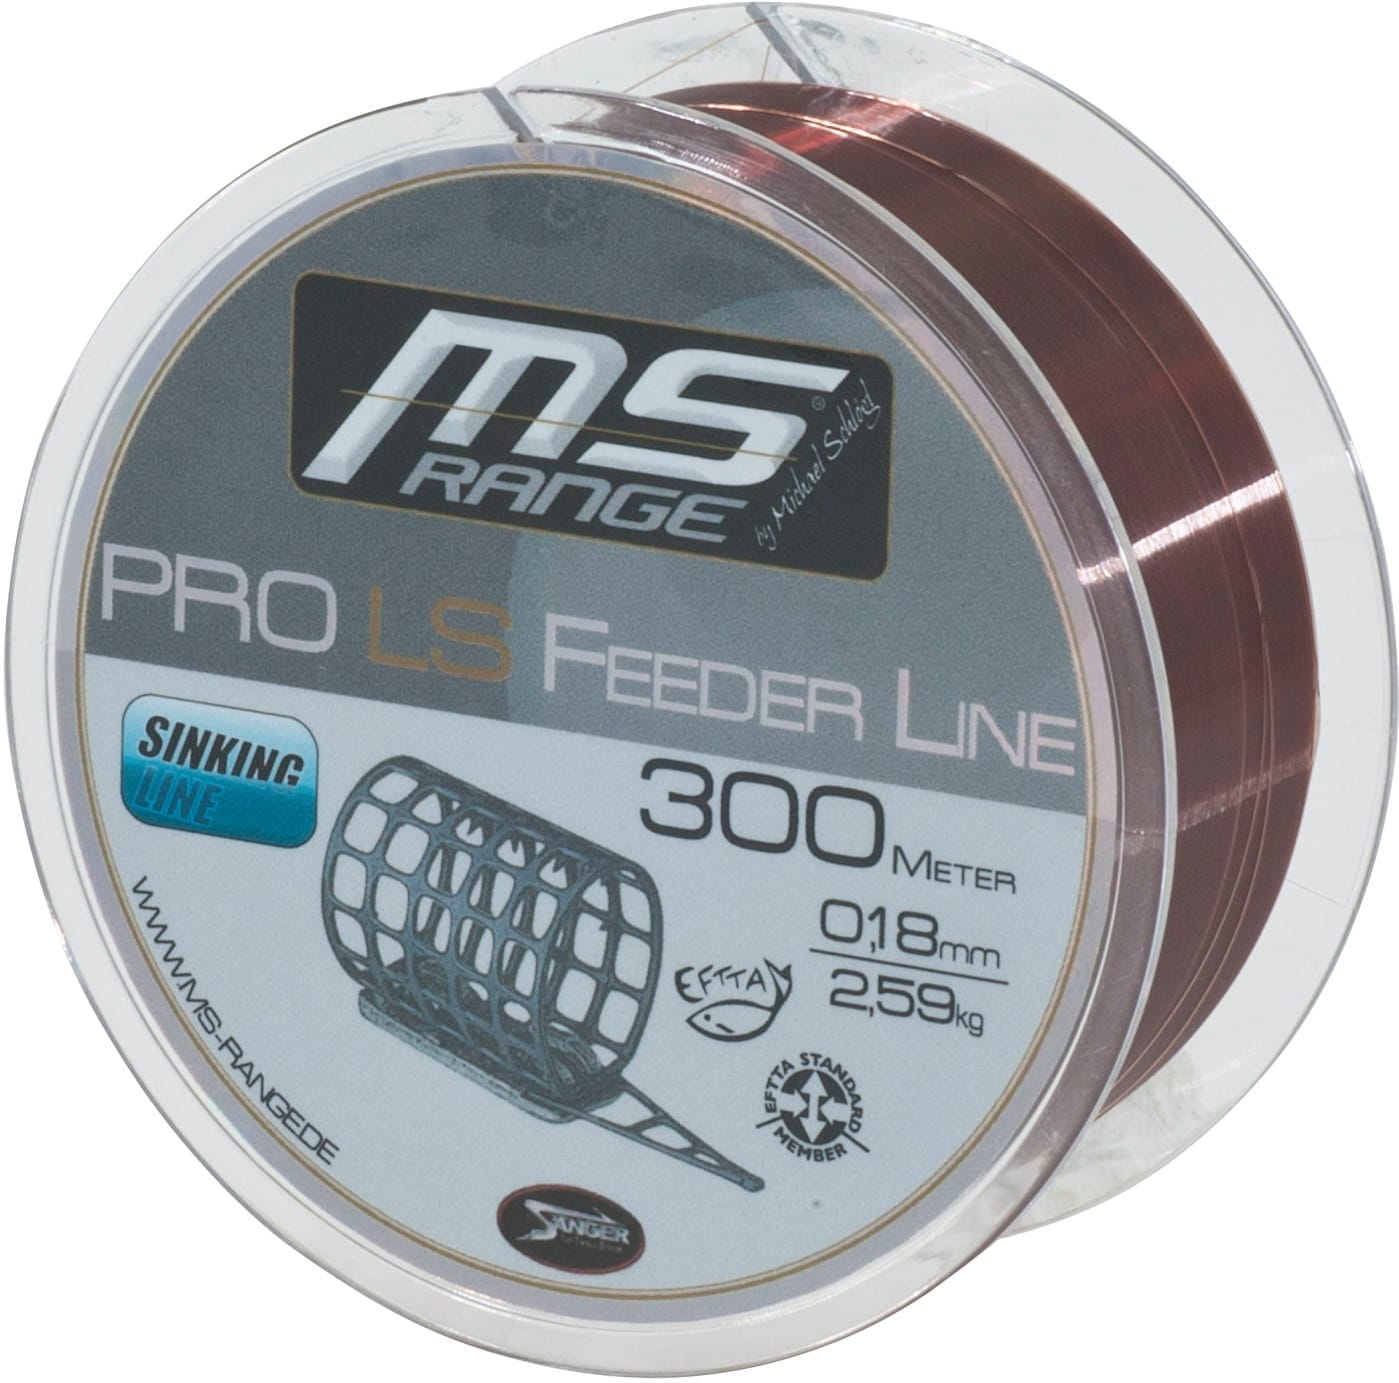 MS Range Pro LS Feeder Line 300m